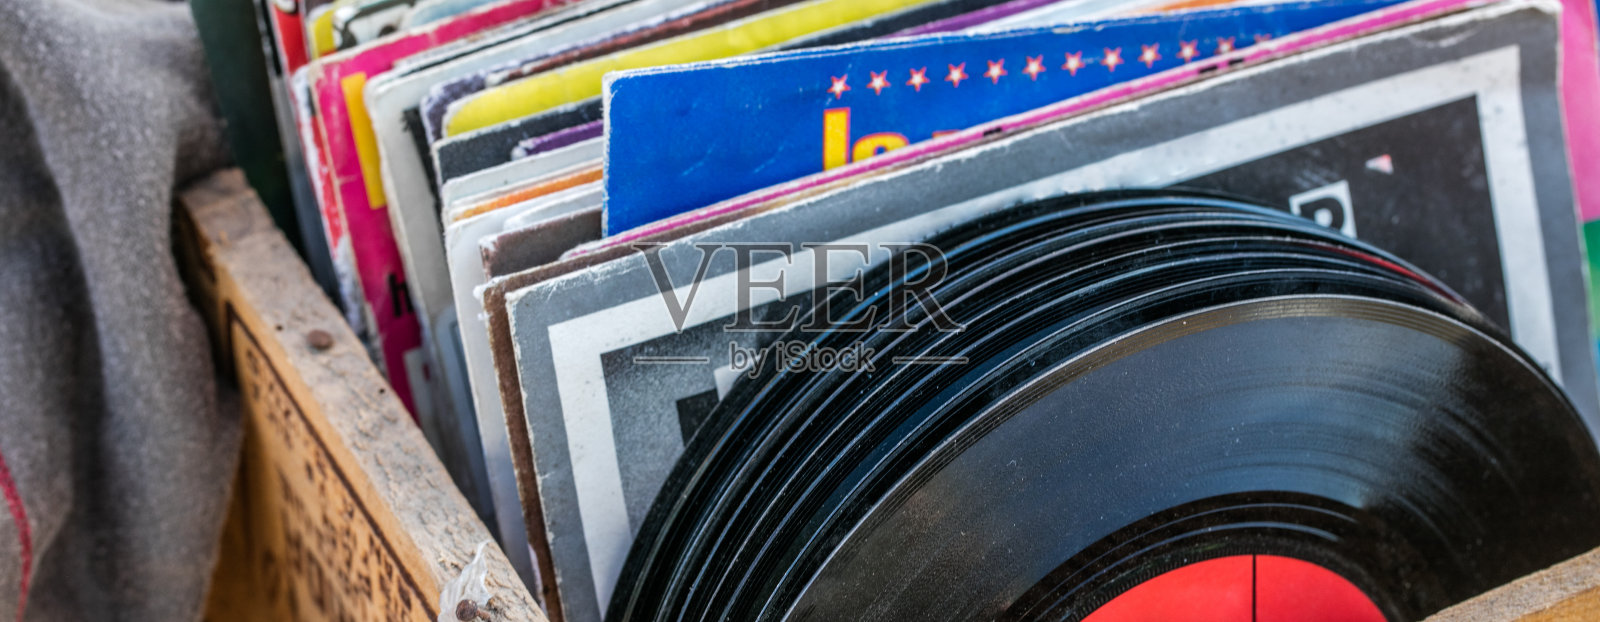 车库出售展示的黑胶唱片和黑胶唱片为音乐收藏家照片摄影图片